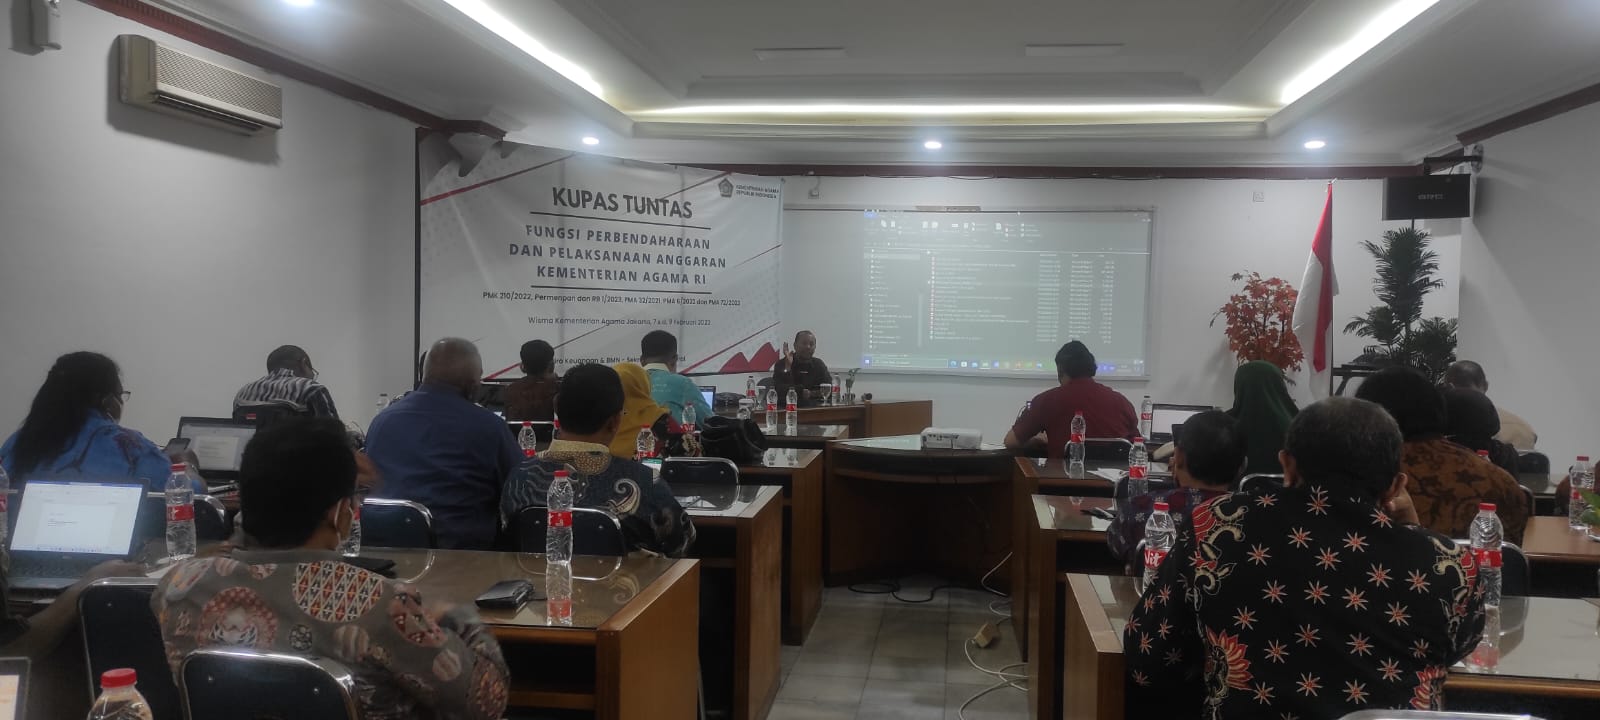 BDK Palembang Hadiri Rakor, Bahas Pemetaan Formasi Jabatan Fungsional Fungsi Perbendaharaan